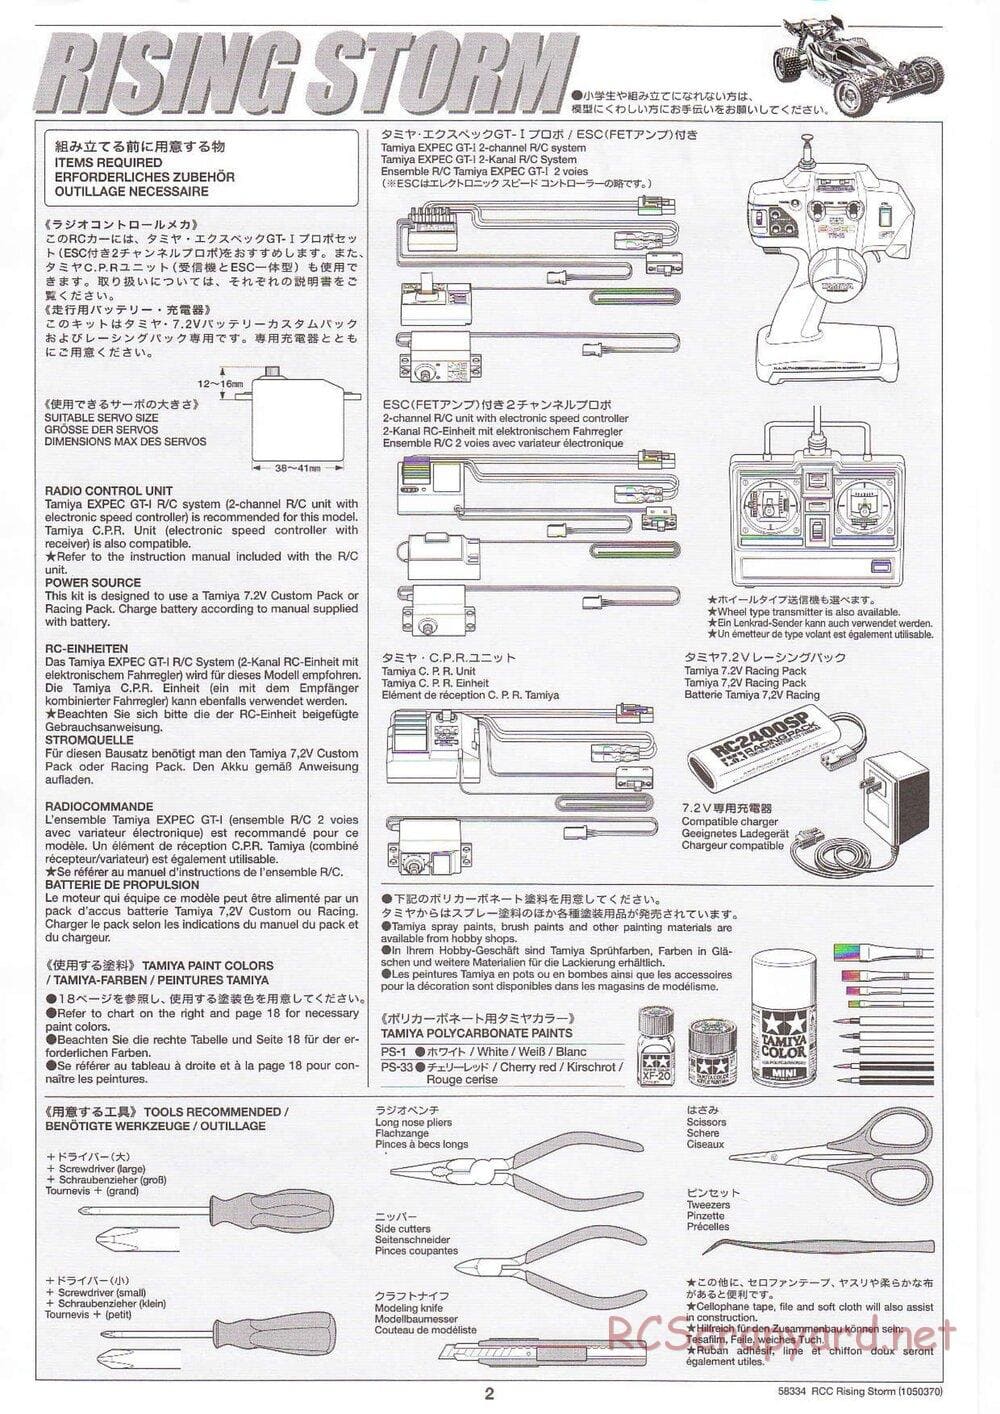 Tamiya - Rising Storm Chassis - Manual - Page 2